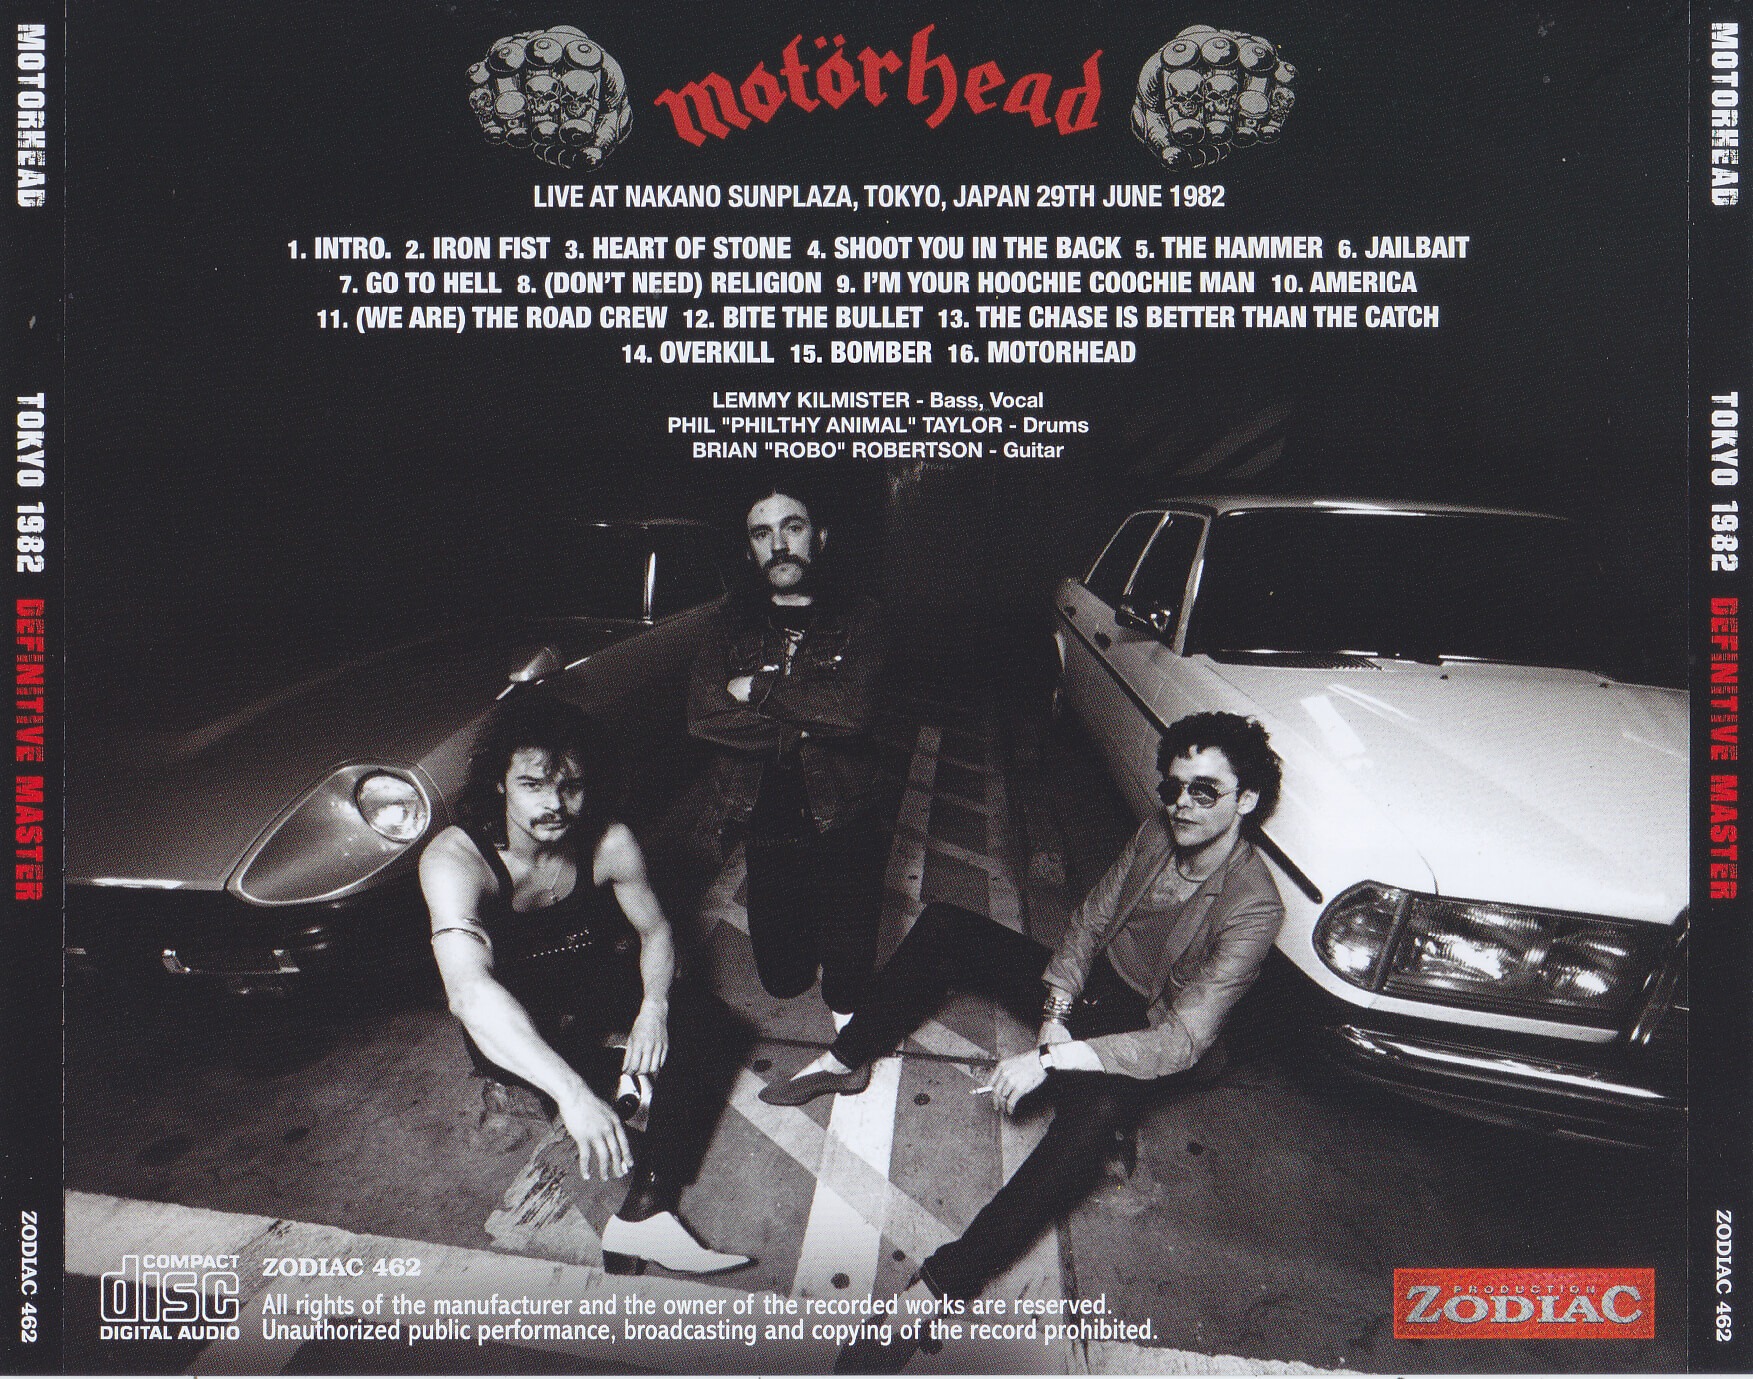 Motorhead / Tokyo 1982 Definitive Master / 1CD+1Bonus DVDR